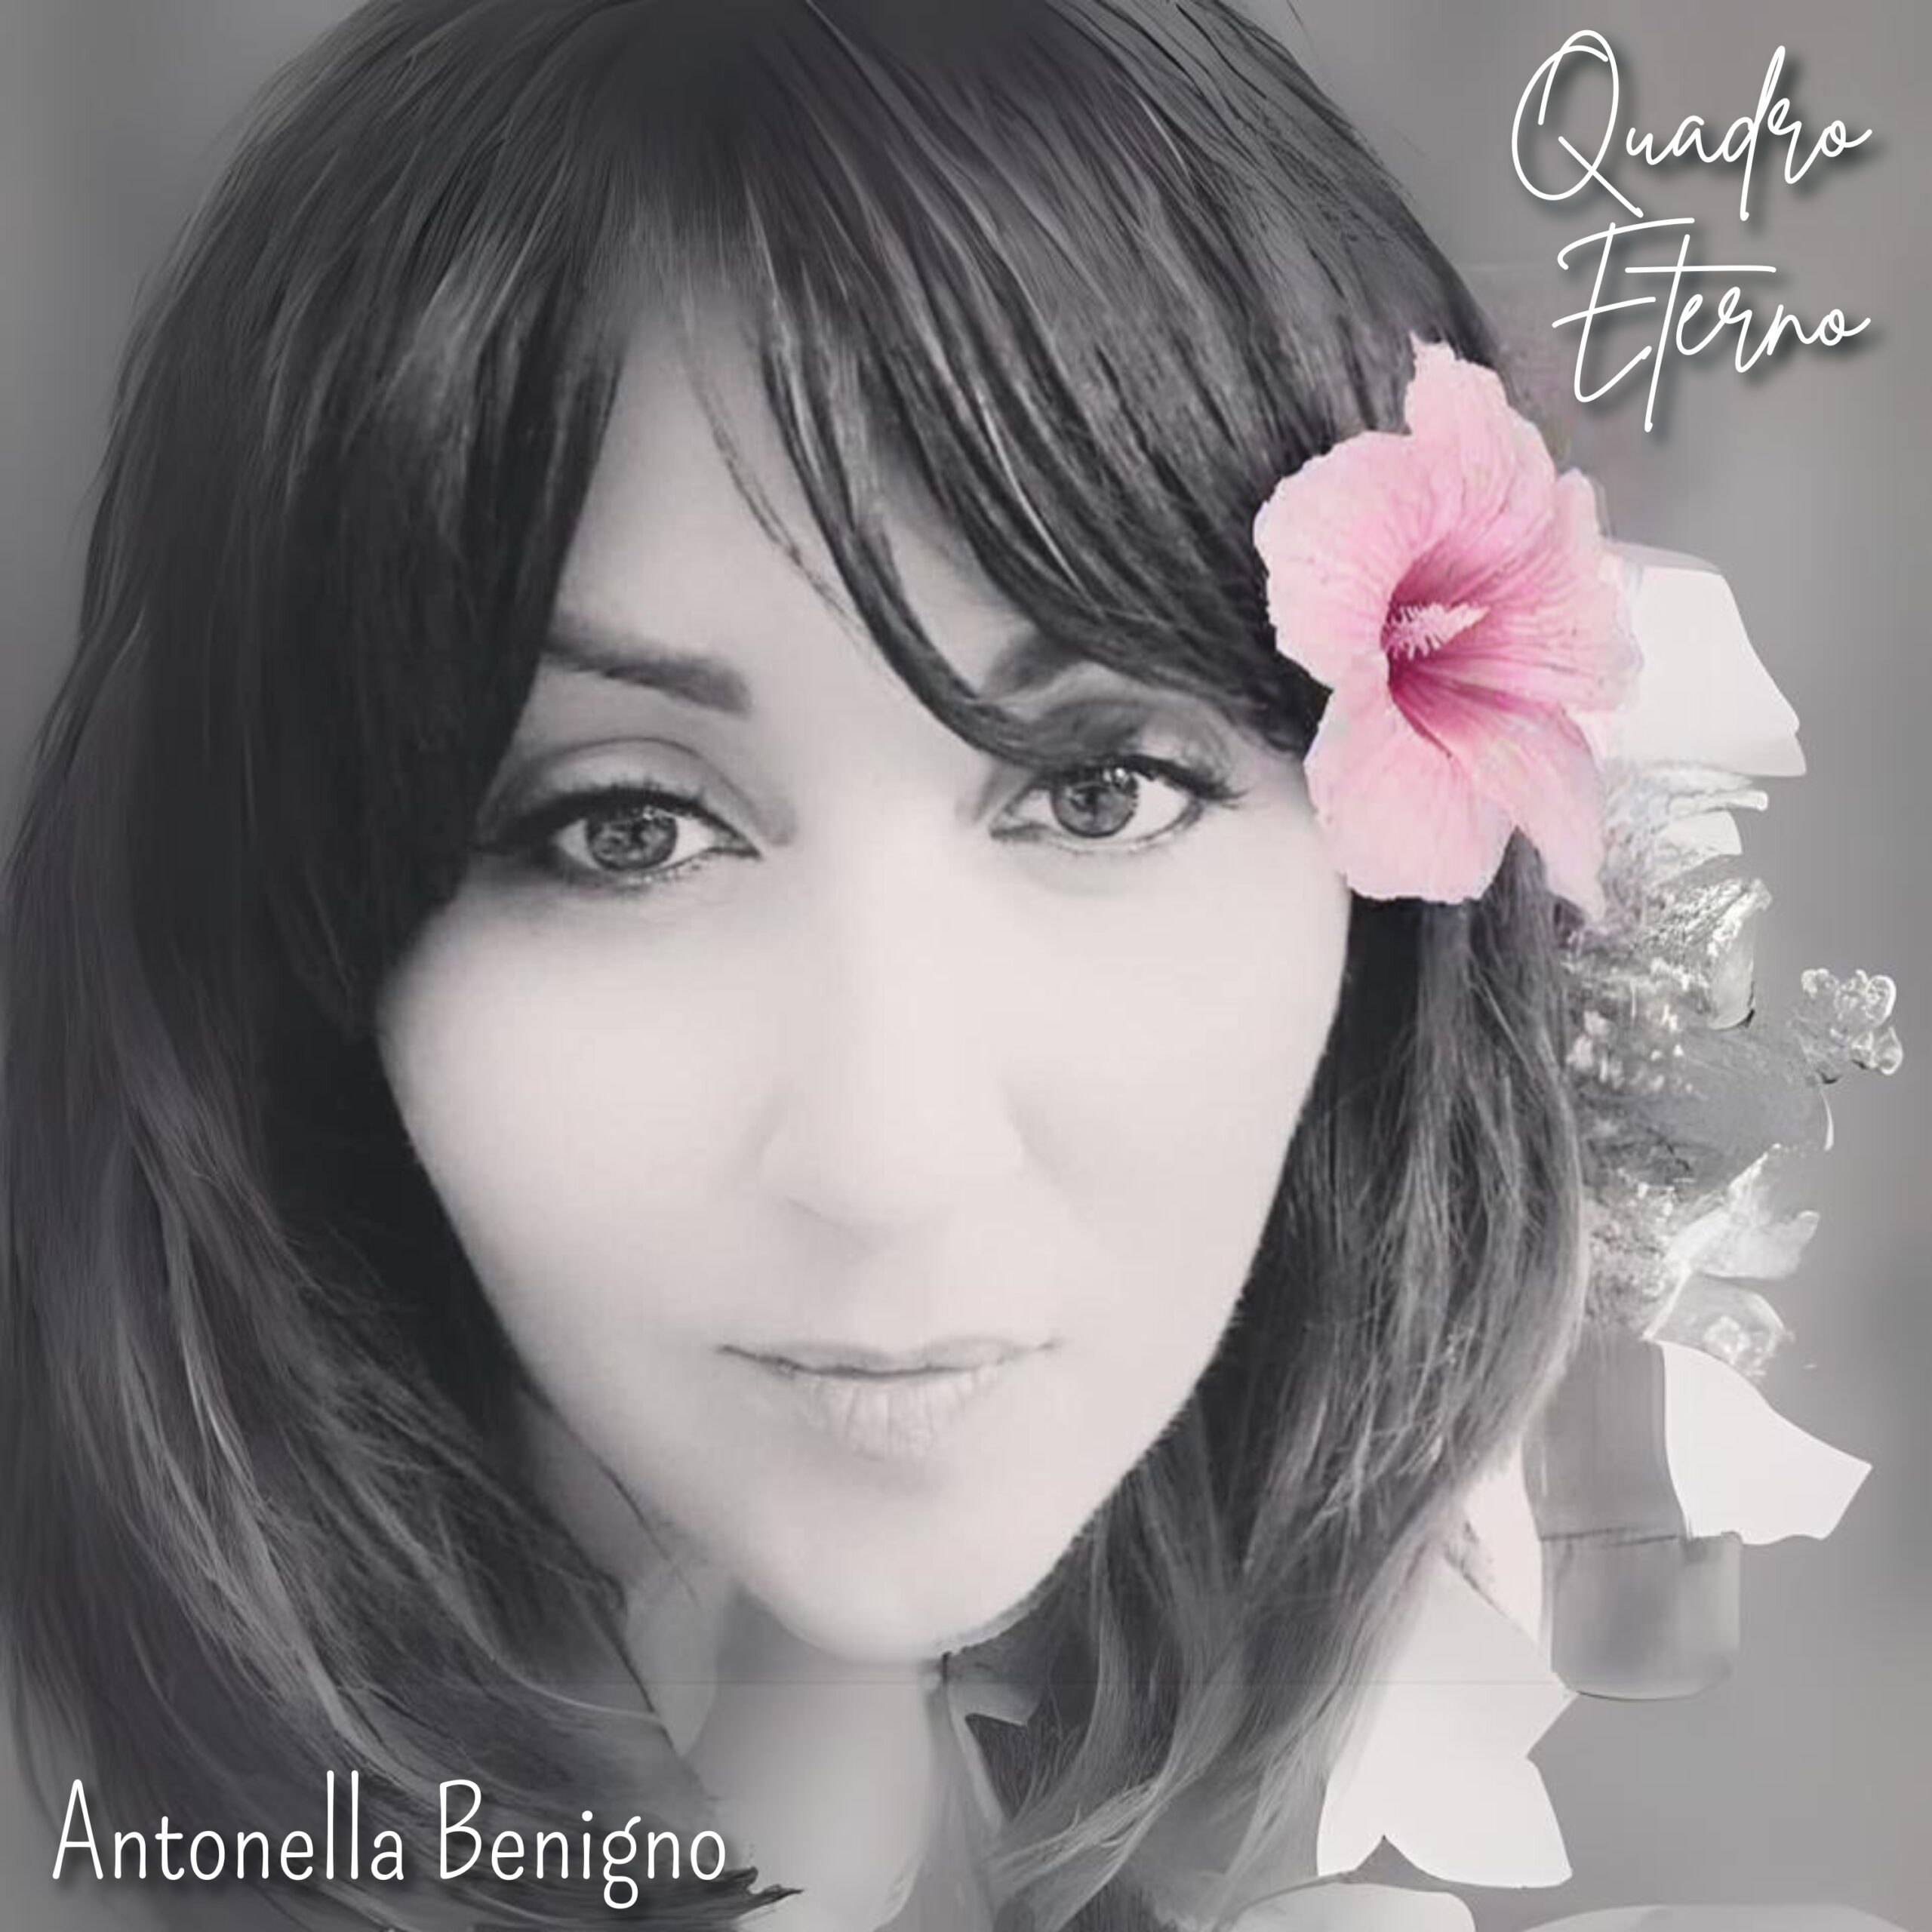 “Quadro Eterno”, il singolo di debutto di Antonella Benigno